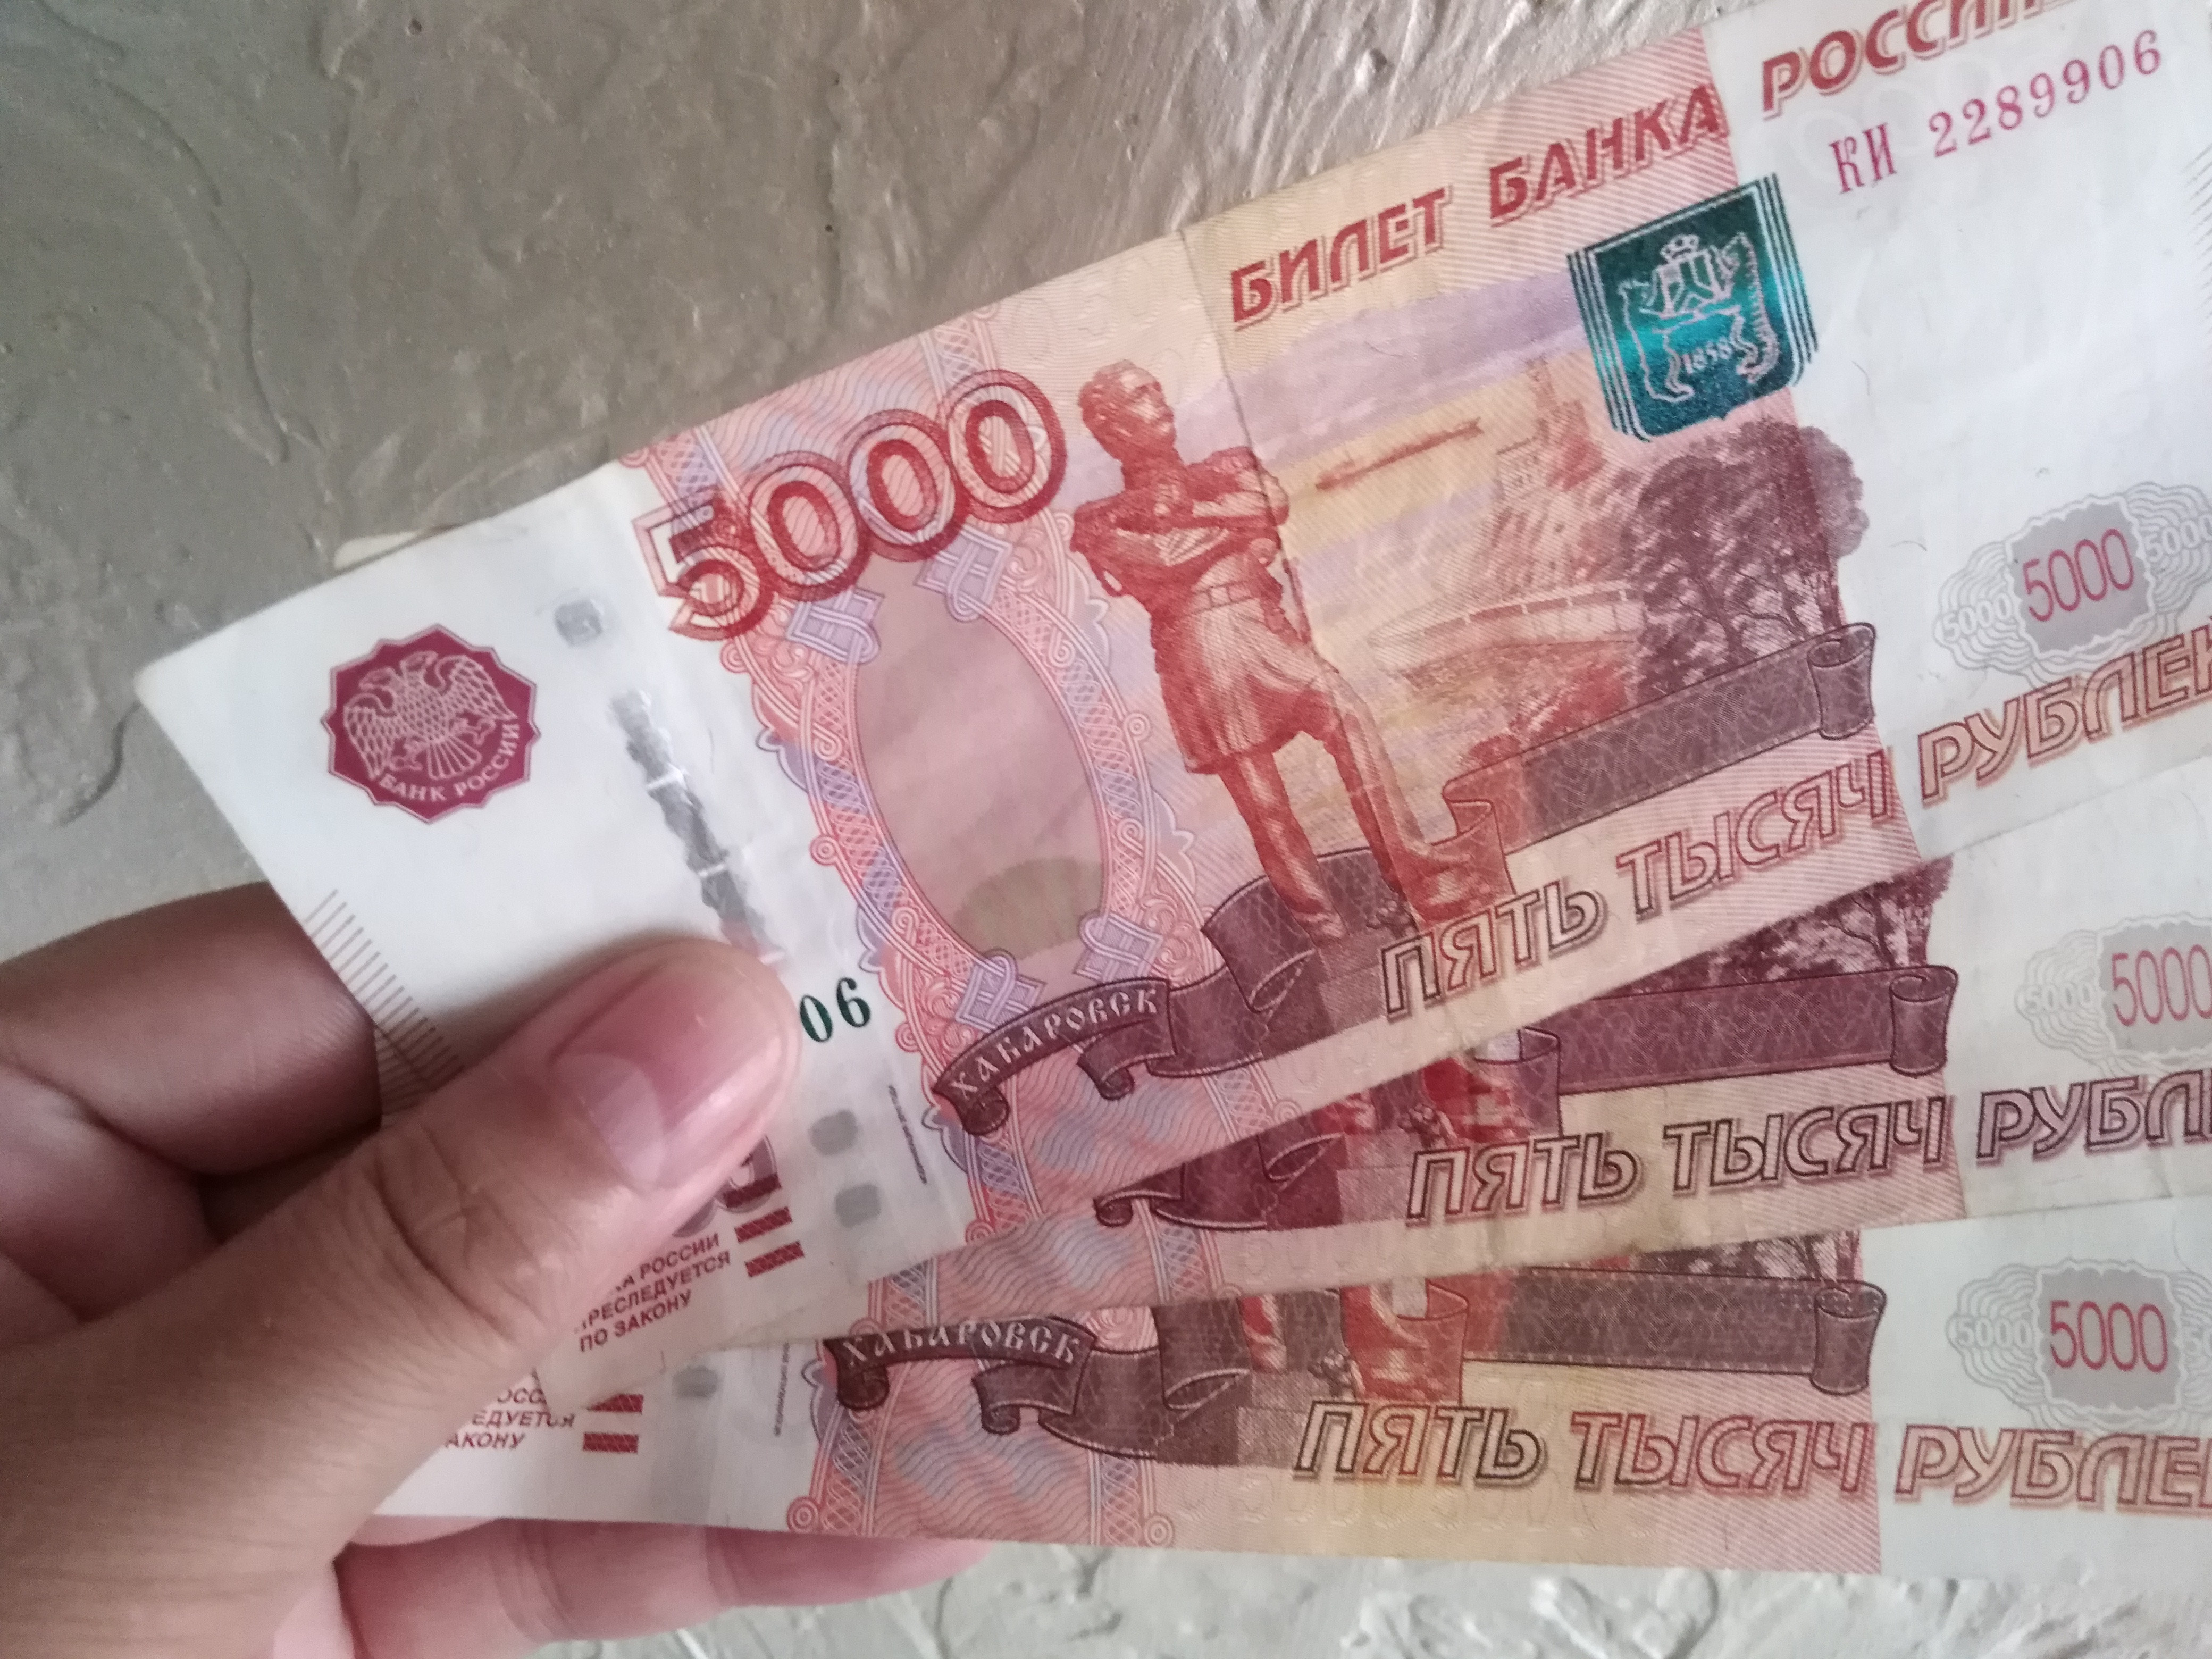 15 Тысяч рублей